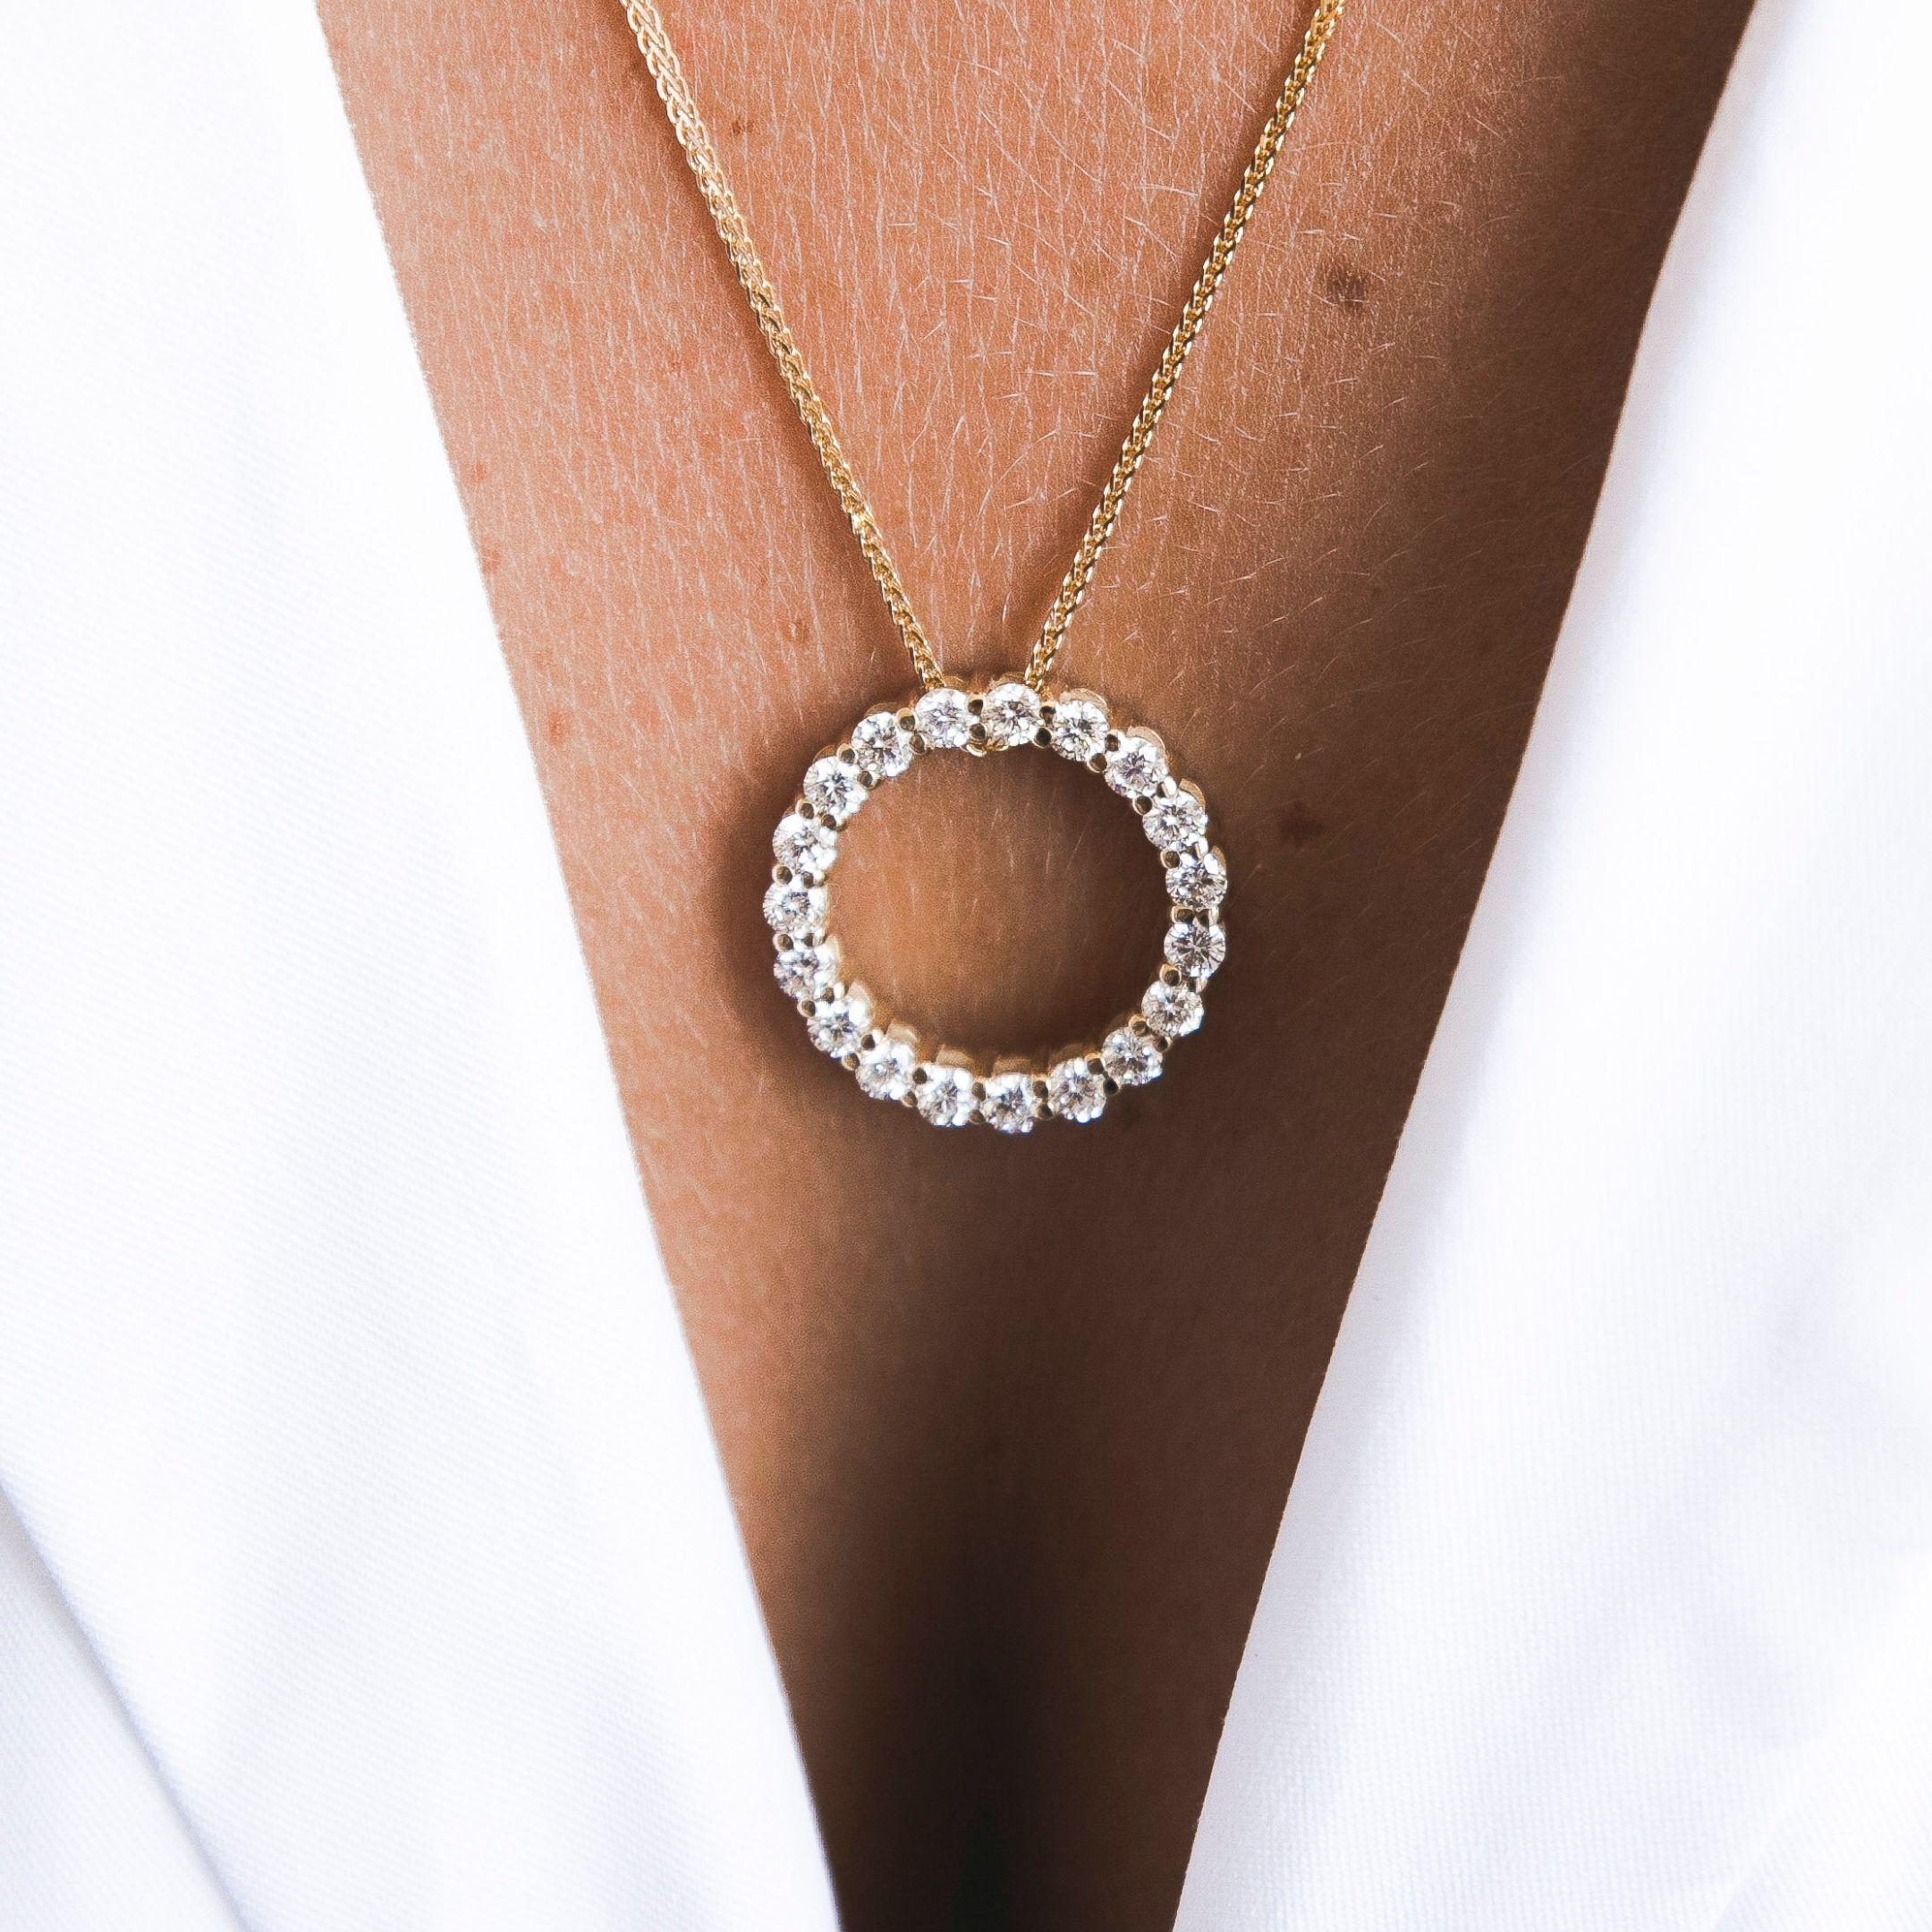 1,30 Karat Diamant Open Circle Eternity Halskette in 14K Gelbgold - Shlomit Rogel

Bringen Sie den Alltag zum Funkeln! Diese moderne Halskette mit offenem Kreis und klassischem Design ist mit 19 echten Diamanten von insgesamt 1,30 Karat besetzt und